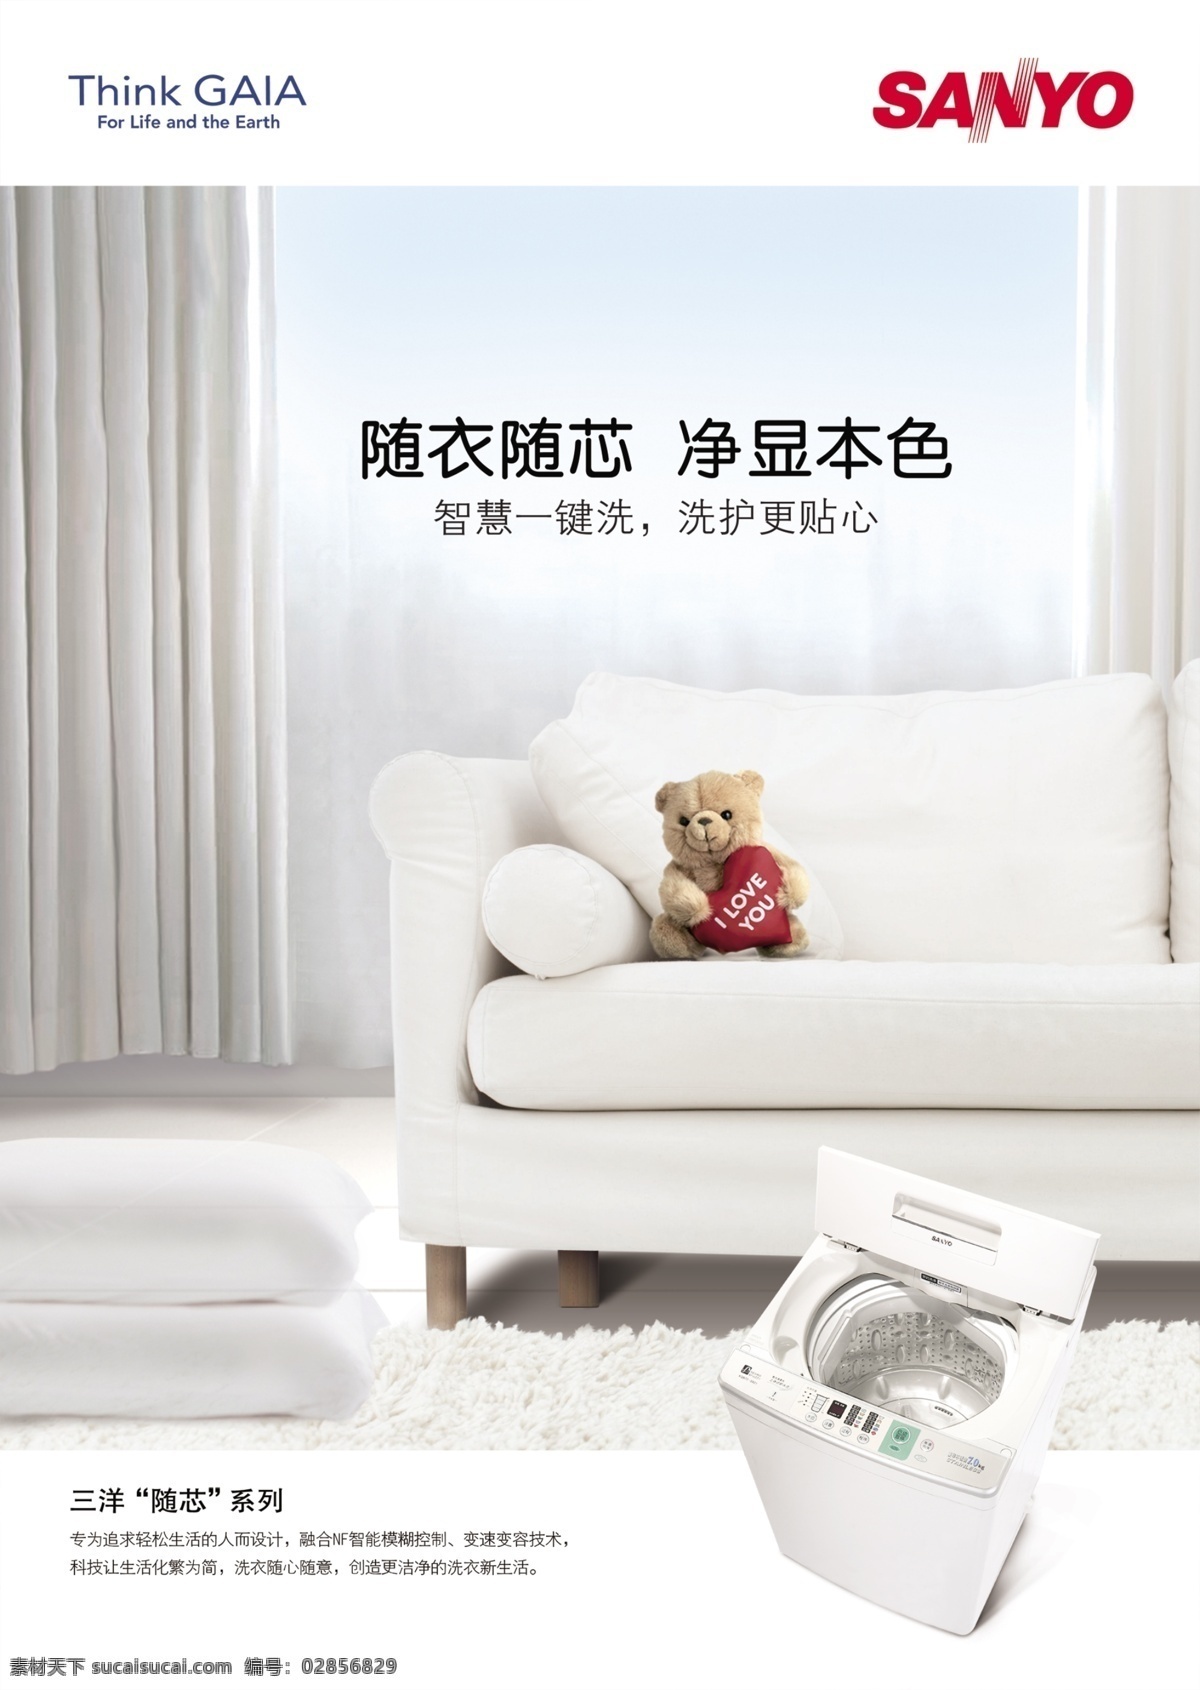 三洋 洗衣机 贴心 服务 广告 模板 三洋品牌 室内效果 沙发 小熊 系列 洗衣机广告 品质生活 贴心服务 广告图片 分层素材 psd模板 红色